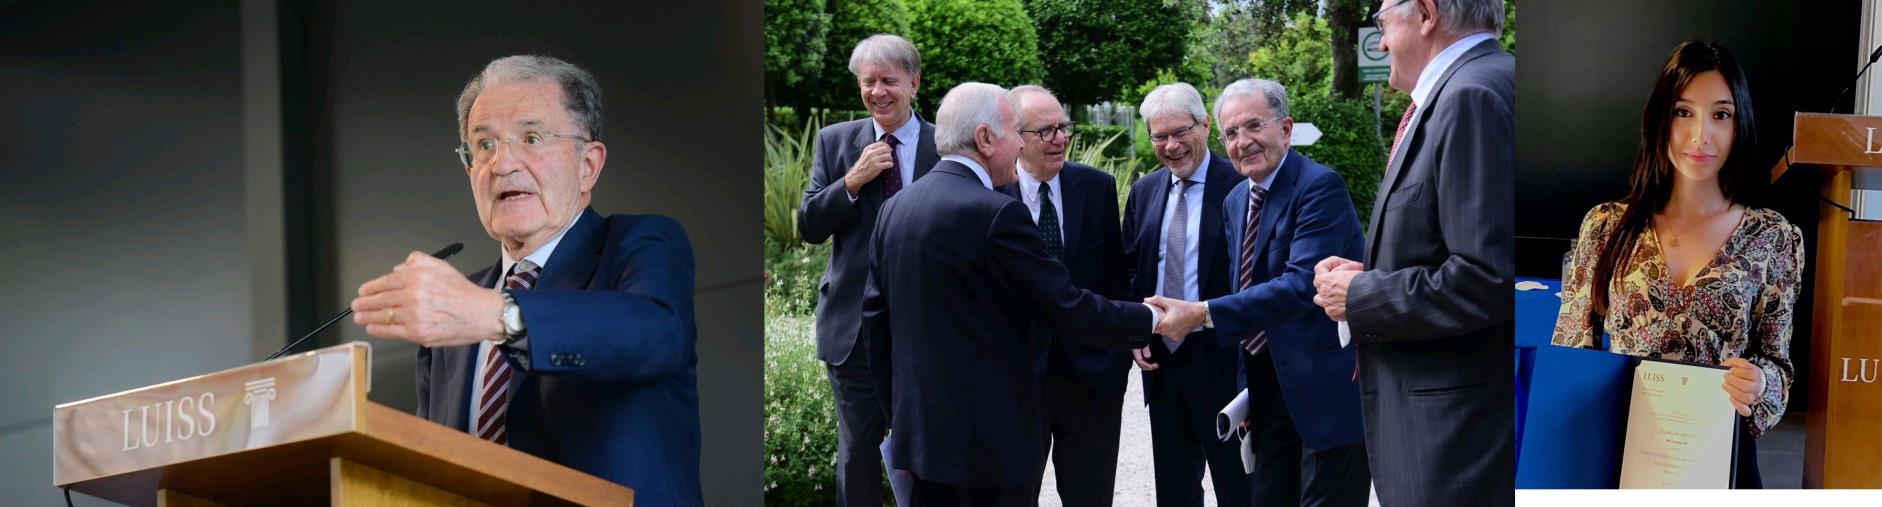 images La girifalcese Natalia Rondinelli premiata da Prodi alla cerimonia dei Master di II secondo livello alla Luiss di Roma